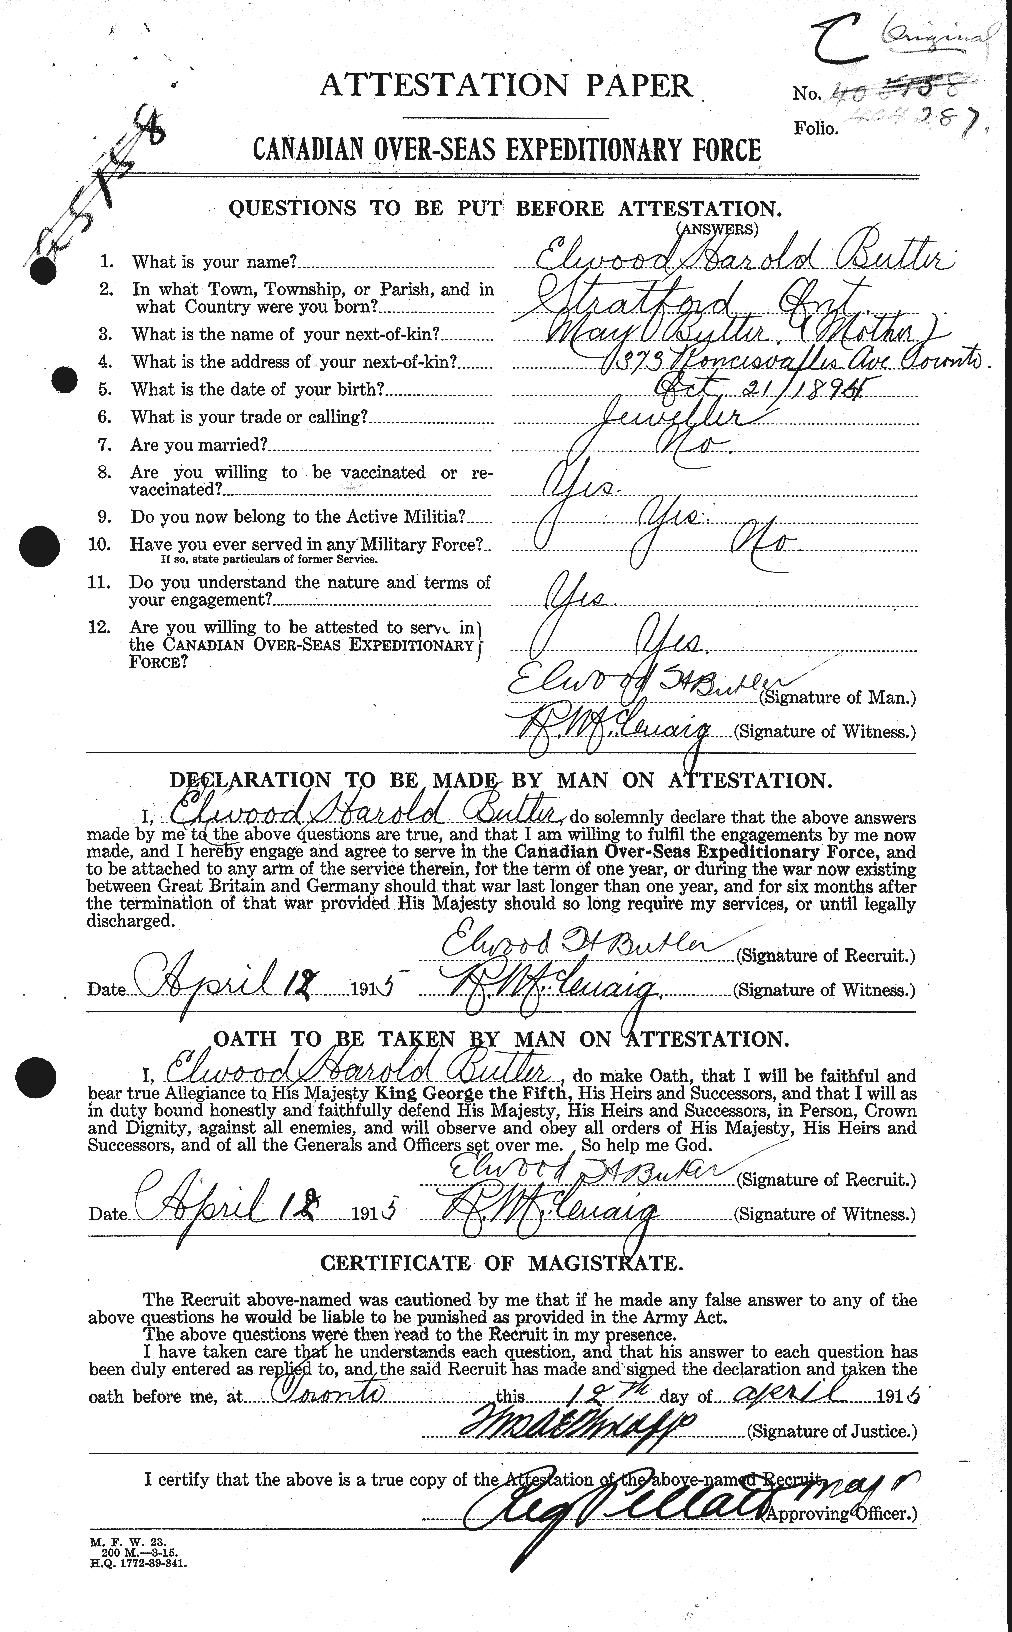 Dossiers du Personnel de la Première Guerre mondiale - CEC 278212a